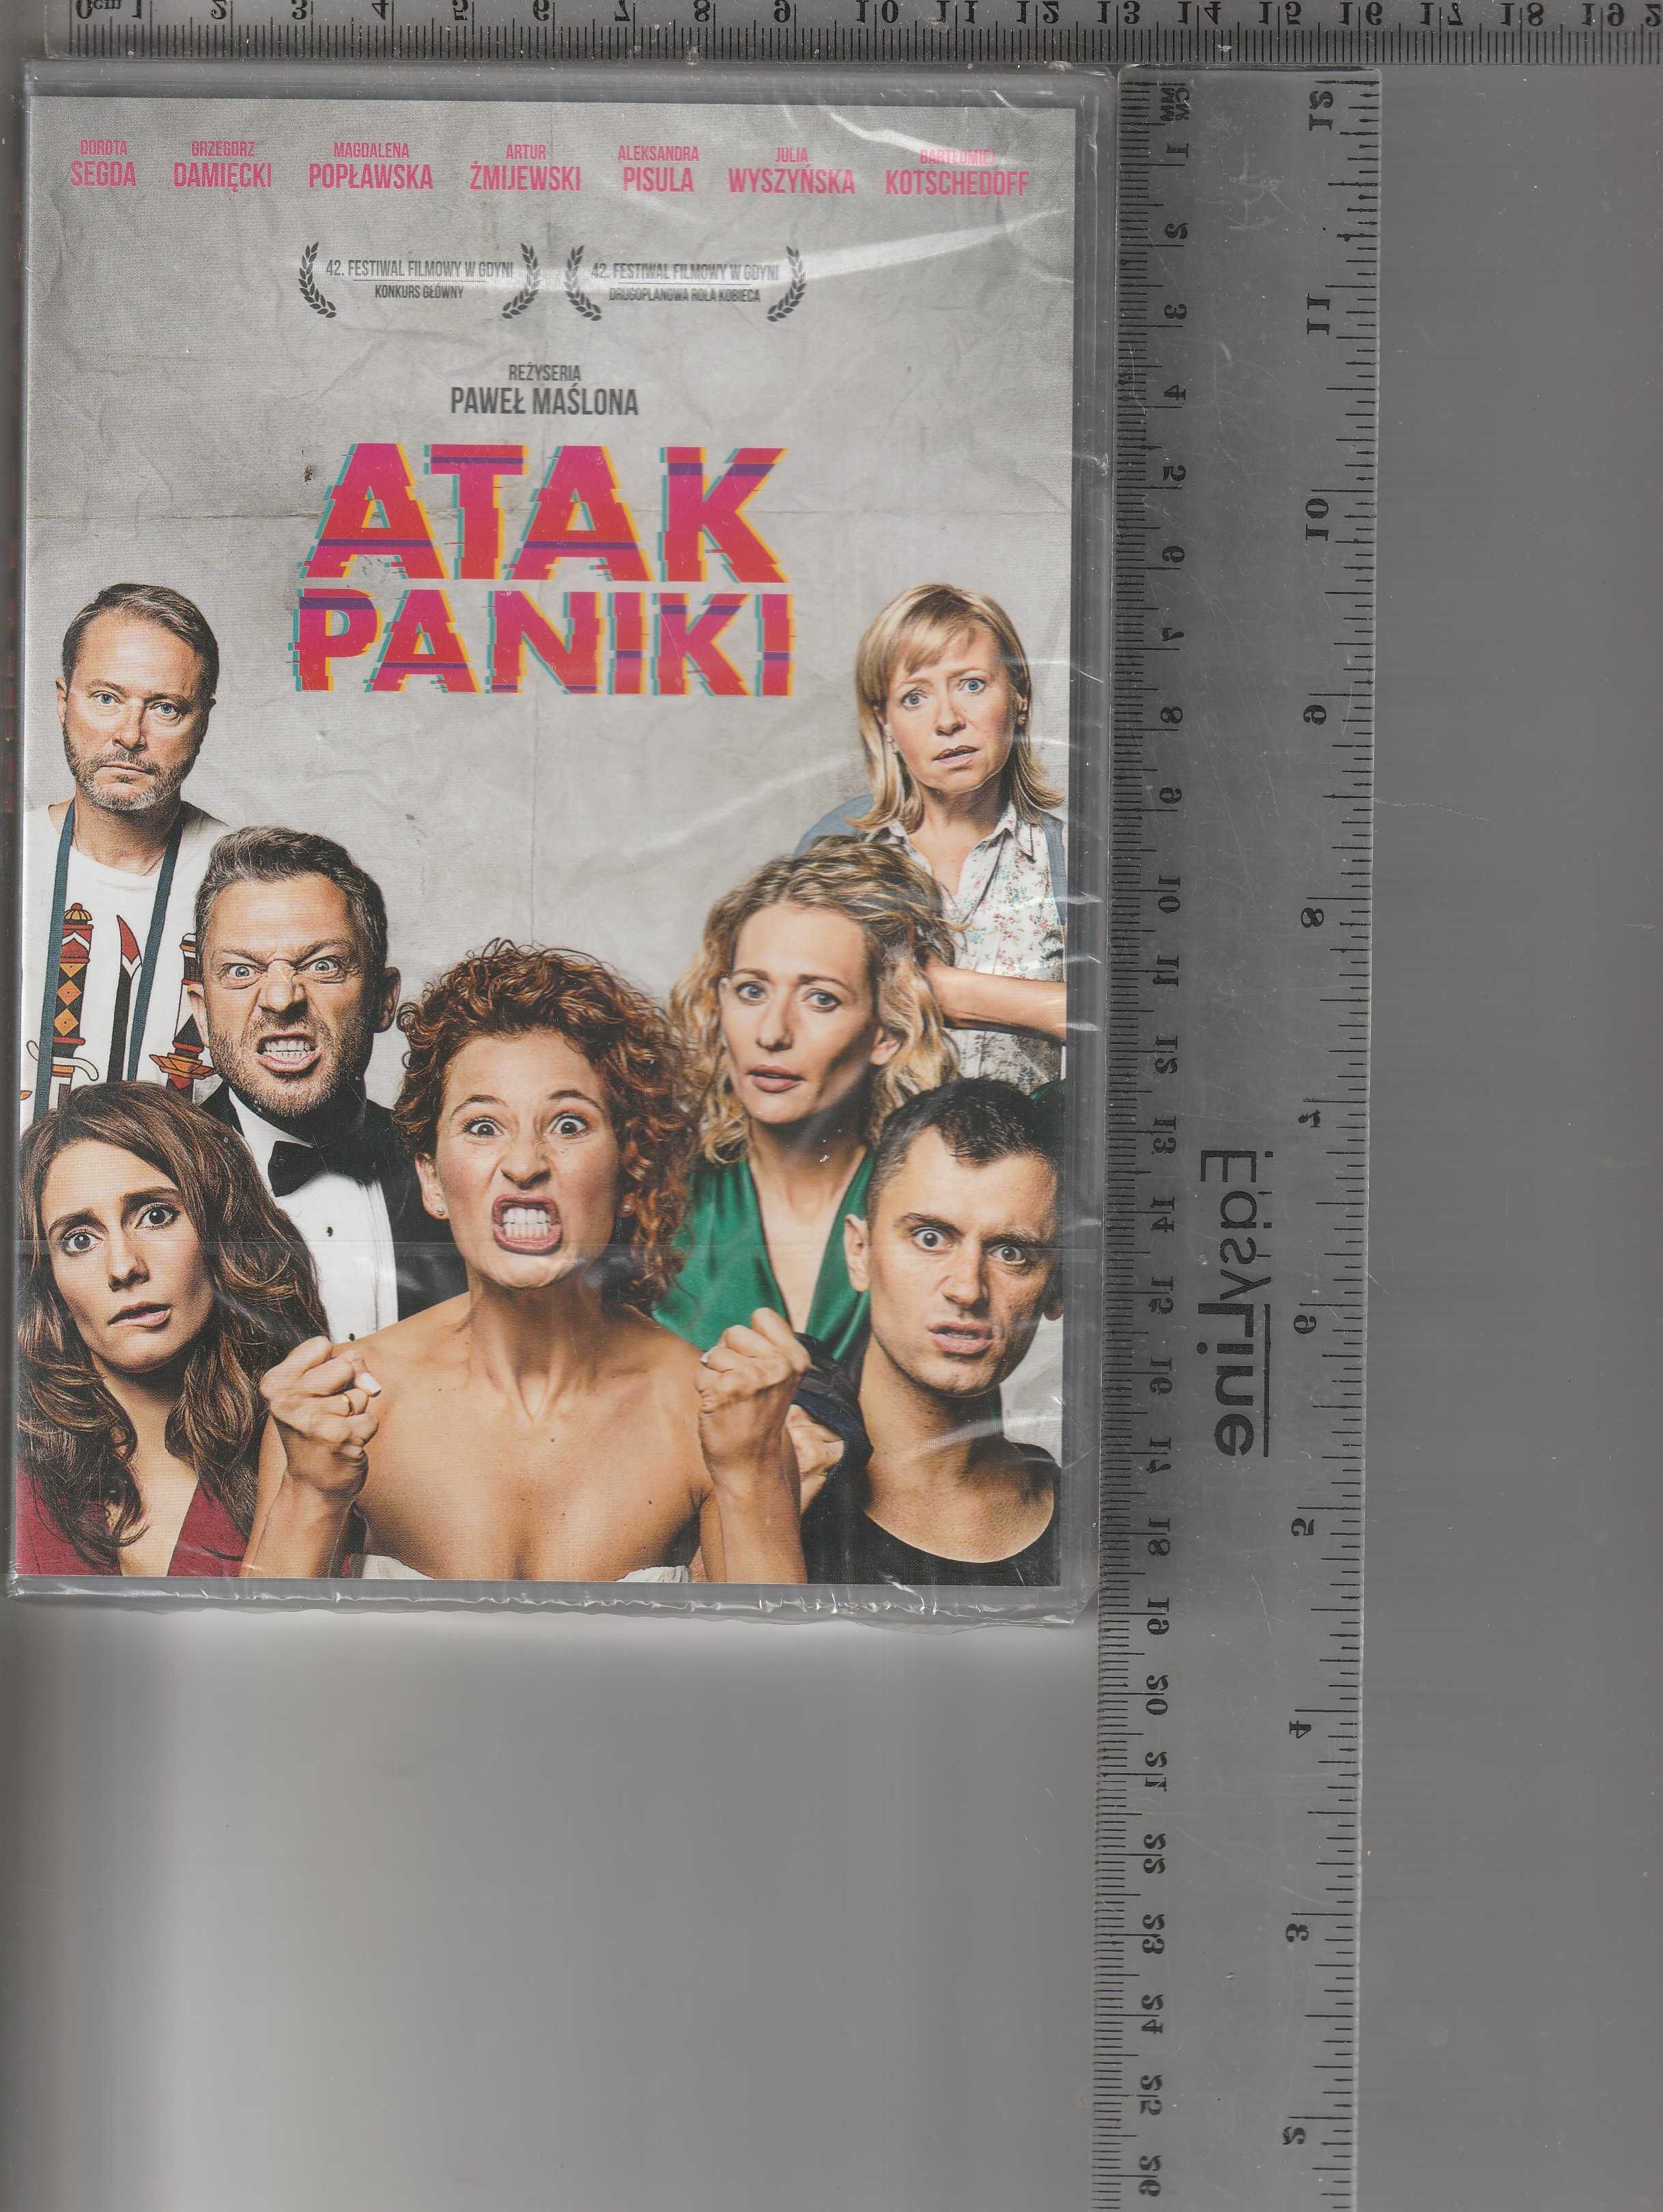 Atak paniki Żmijewski Damięcki Popławska DVD